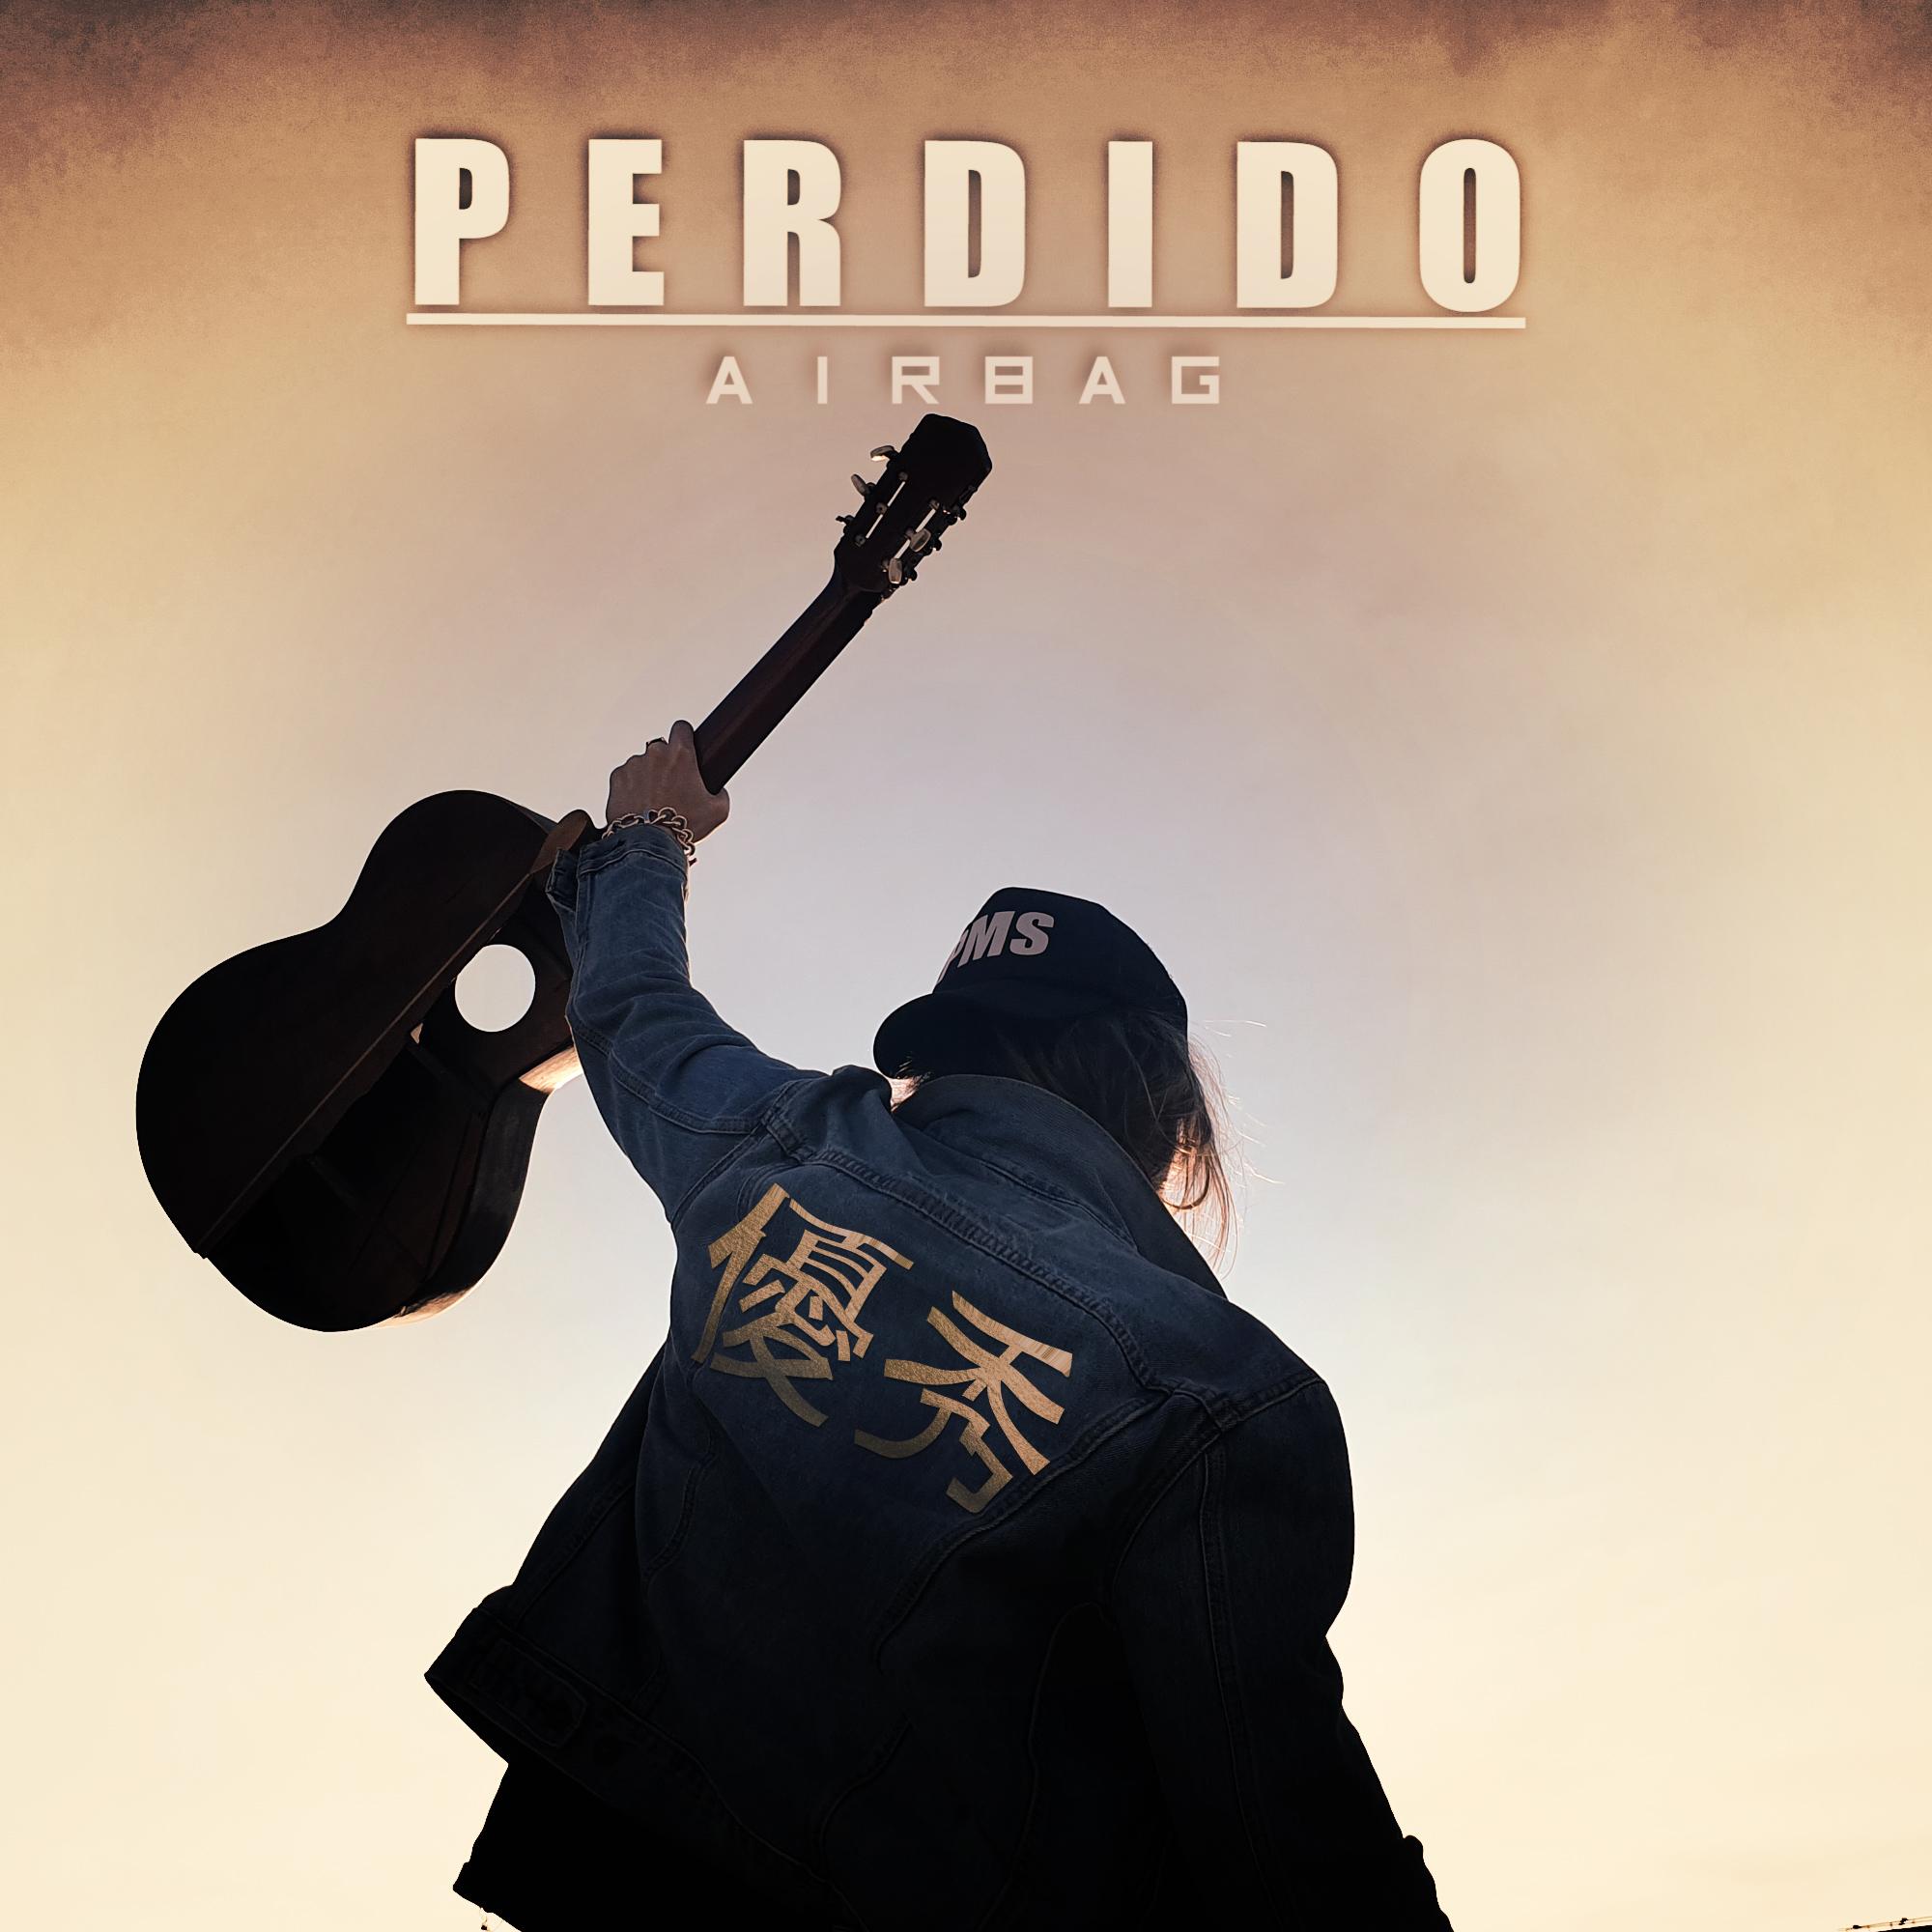  Airbag arrasa con el estreno de “Perdido” su nuevo single y videoclip